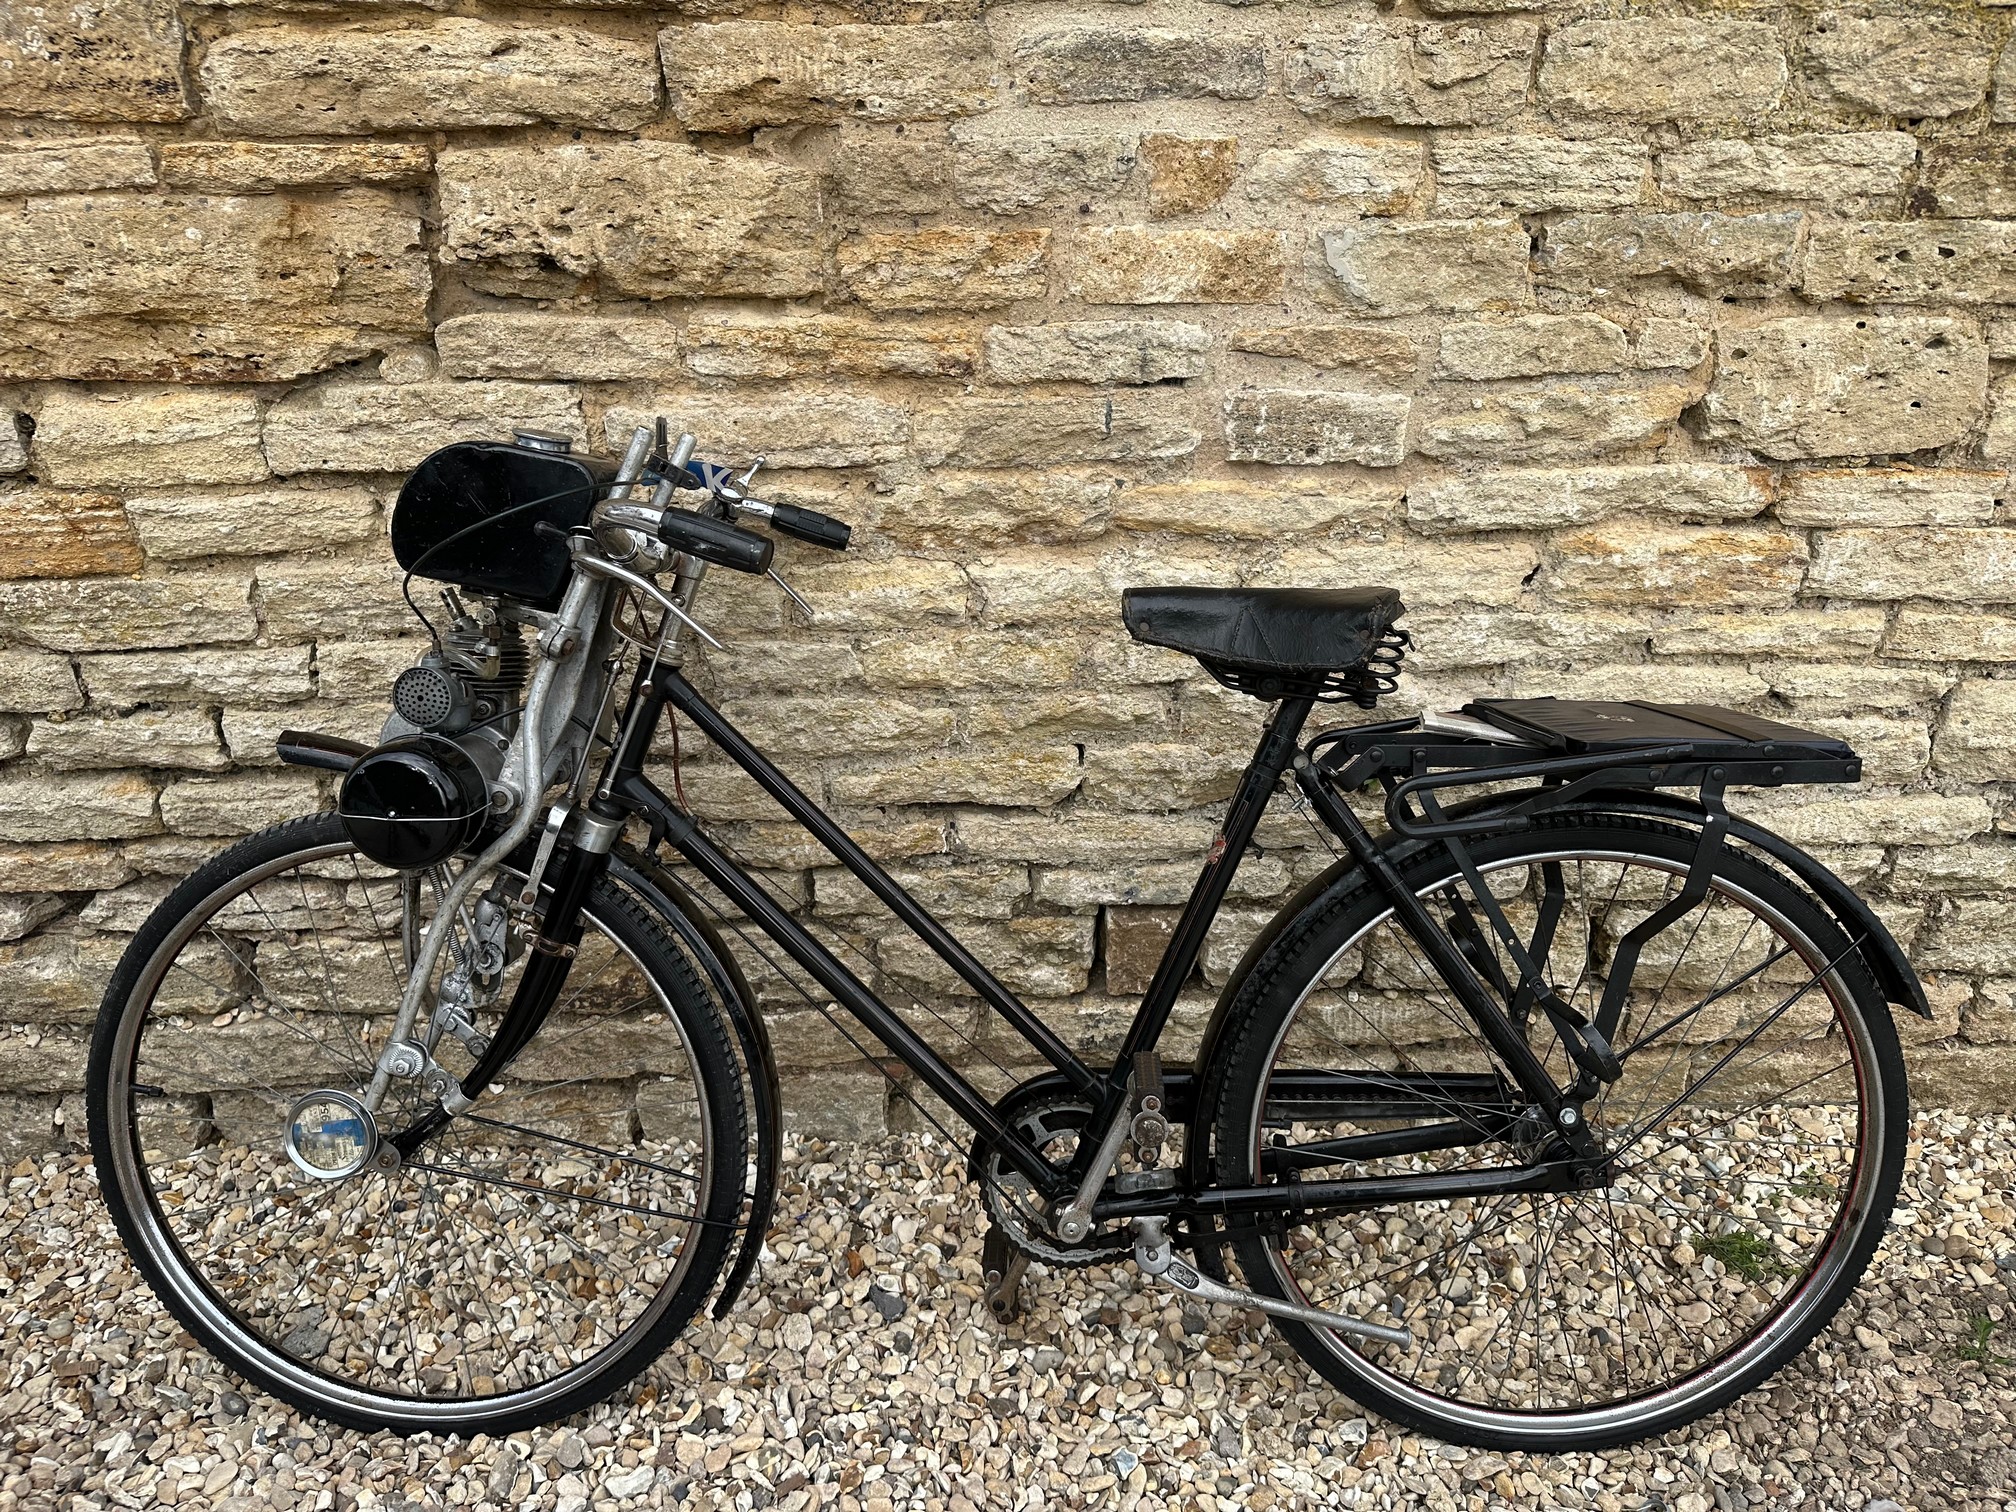 Dawes bicycle with a GYS 49cc engine Reg. no. n/a Frame no. 490 Engine no. - Image 9 of 13